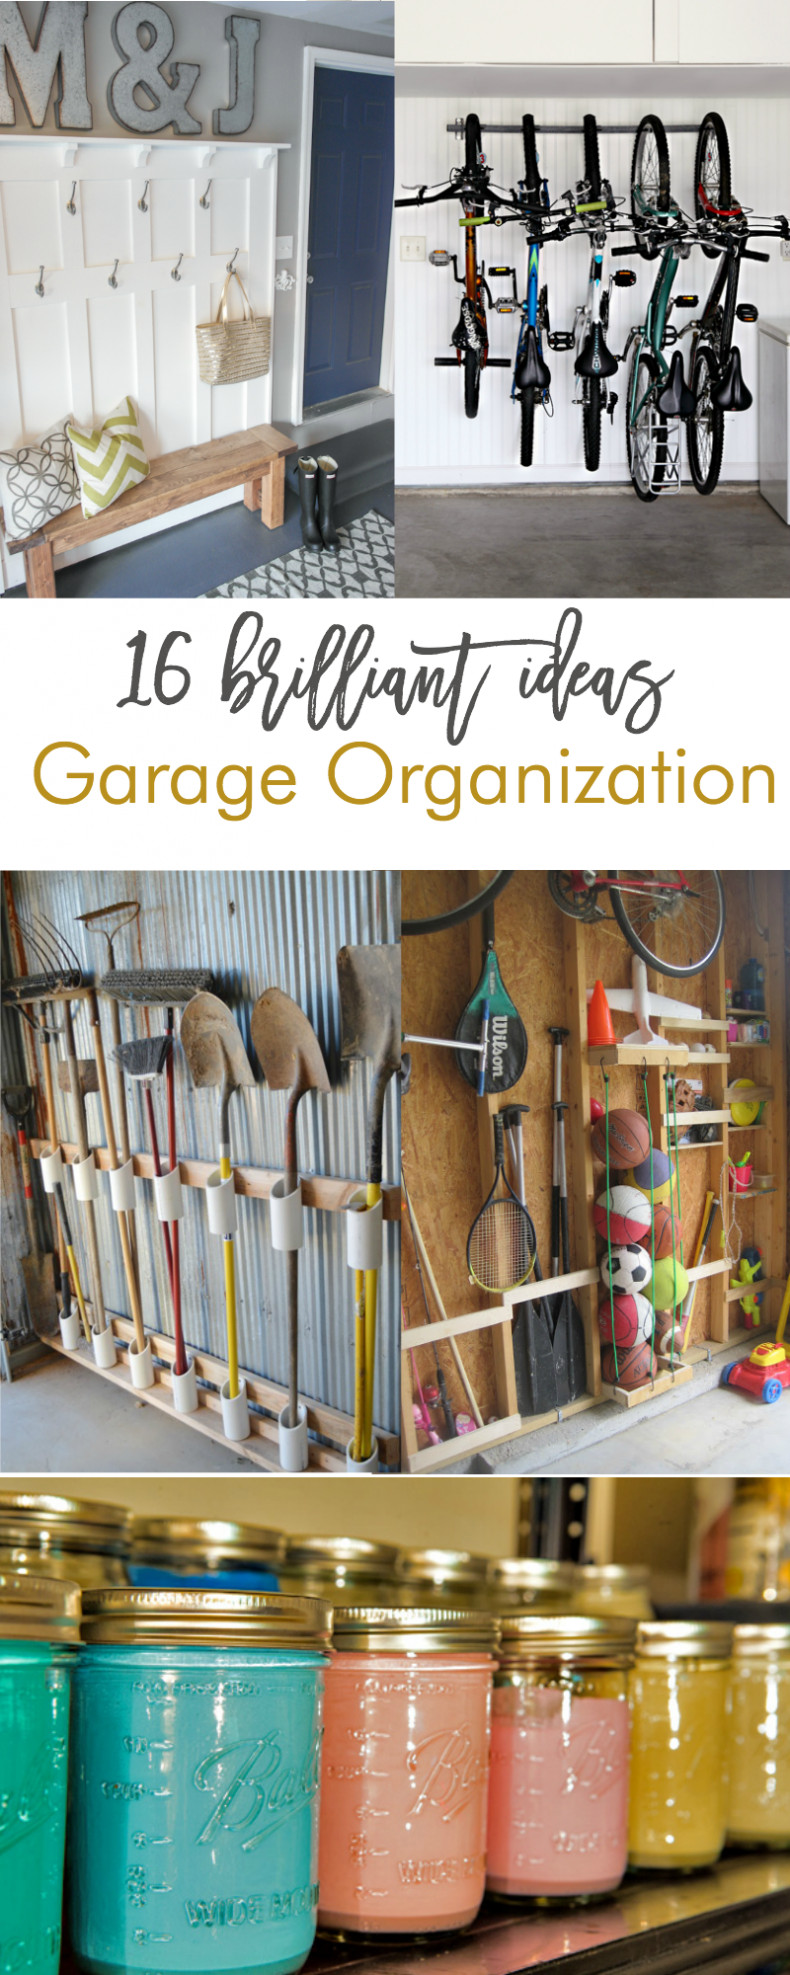 Small Garage Organizing Ideas
 16 Brilliant DIY Garage Organization Ideas